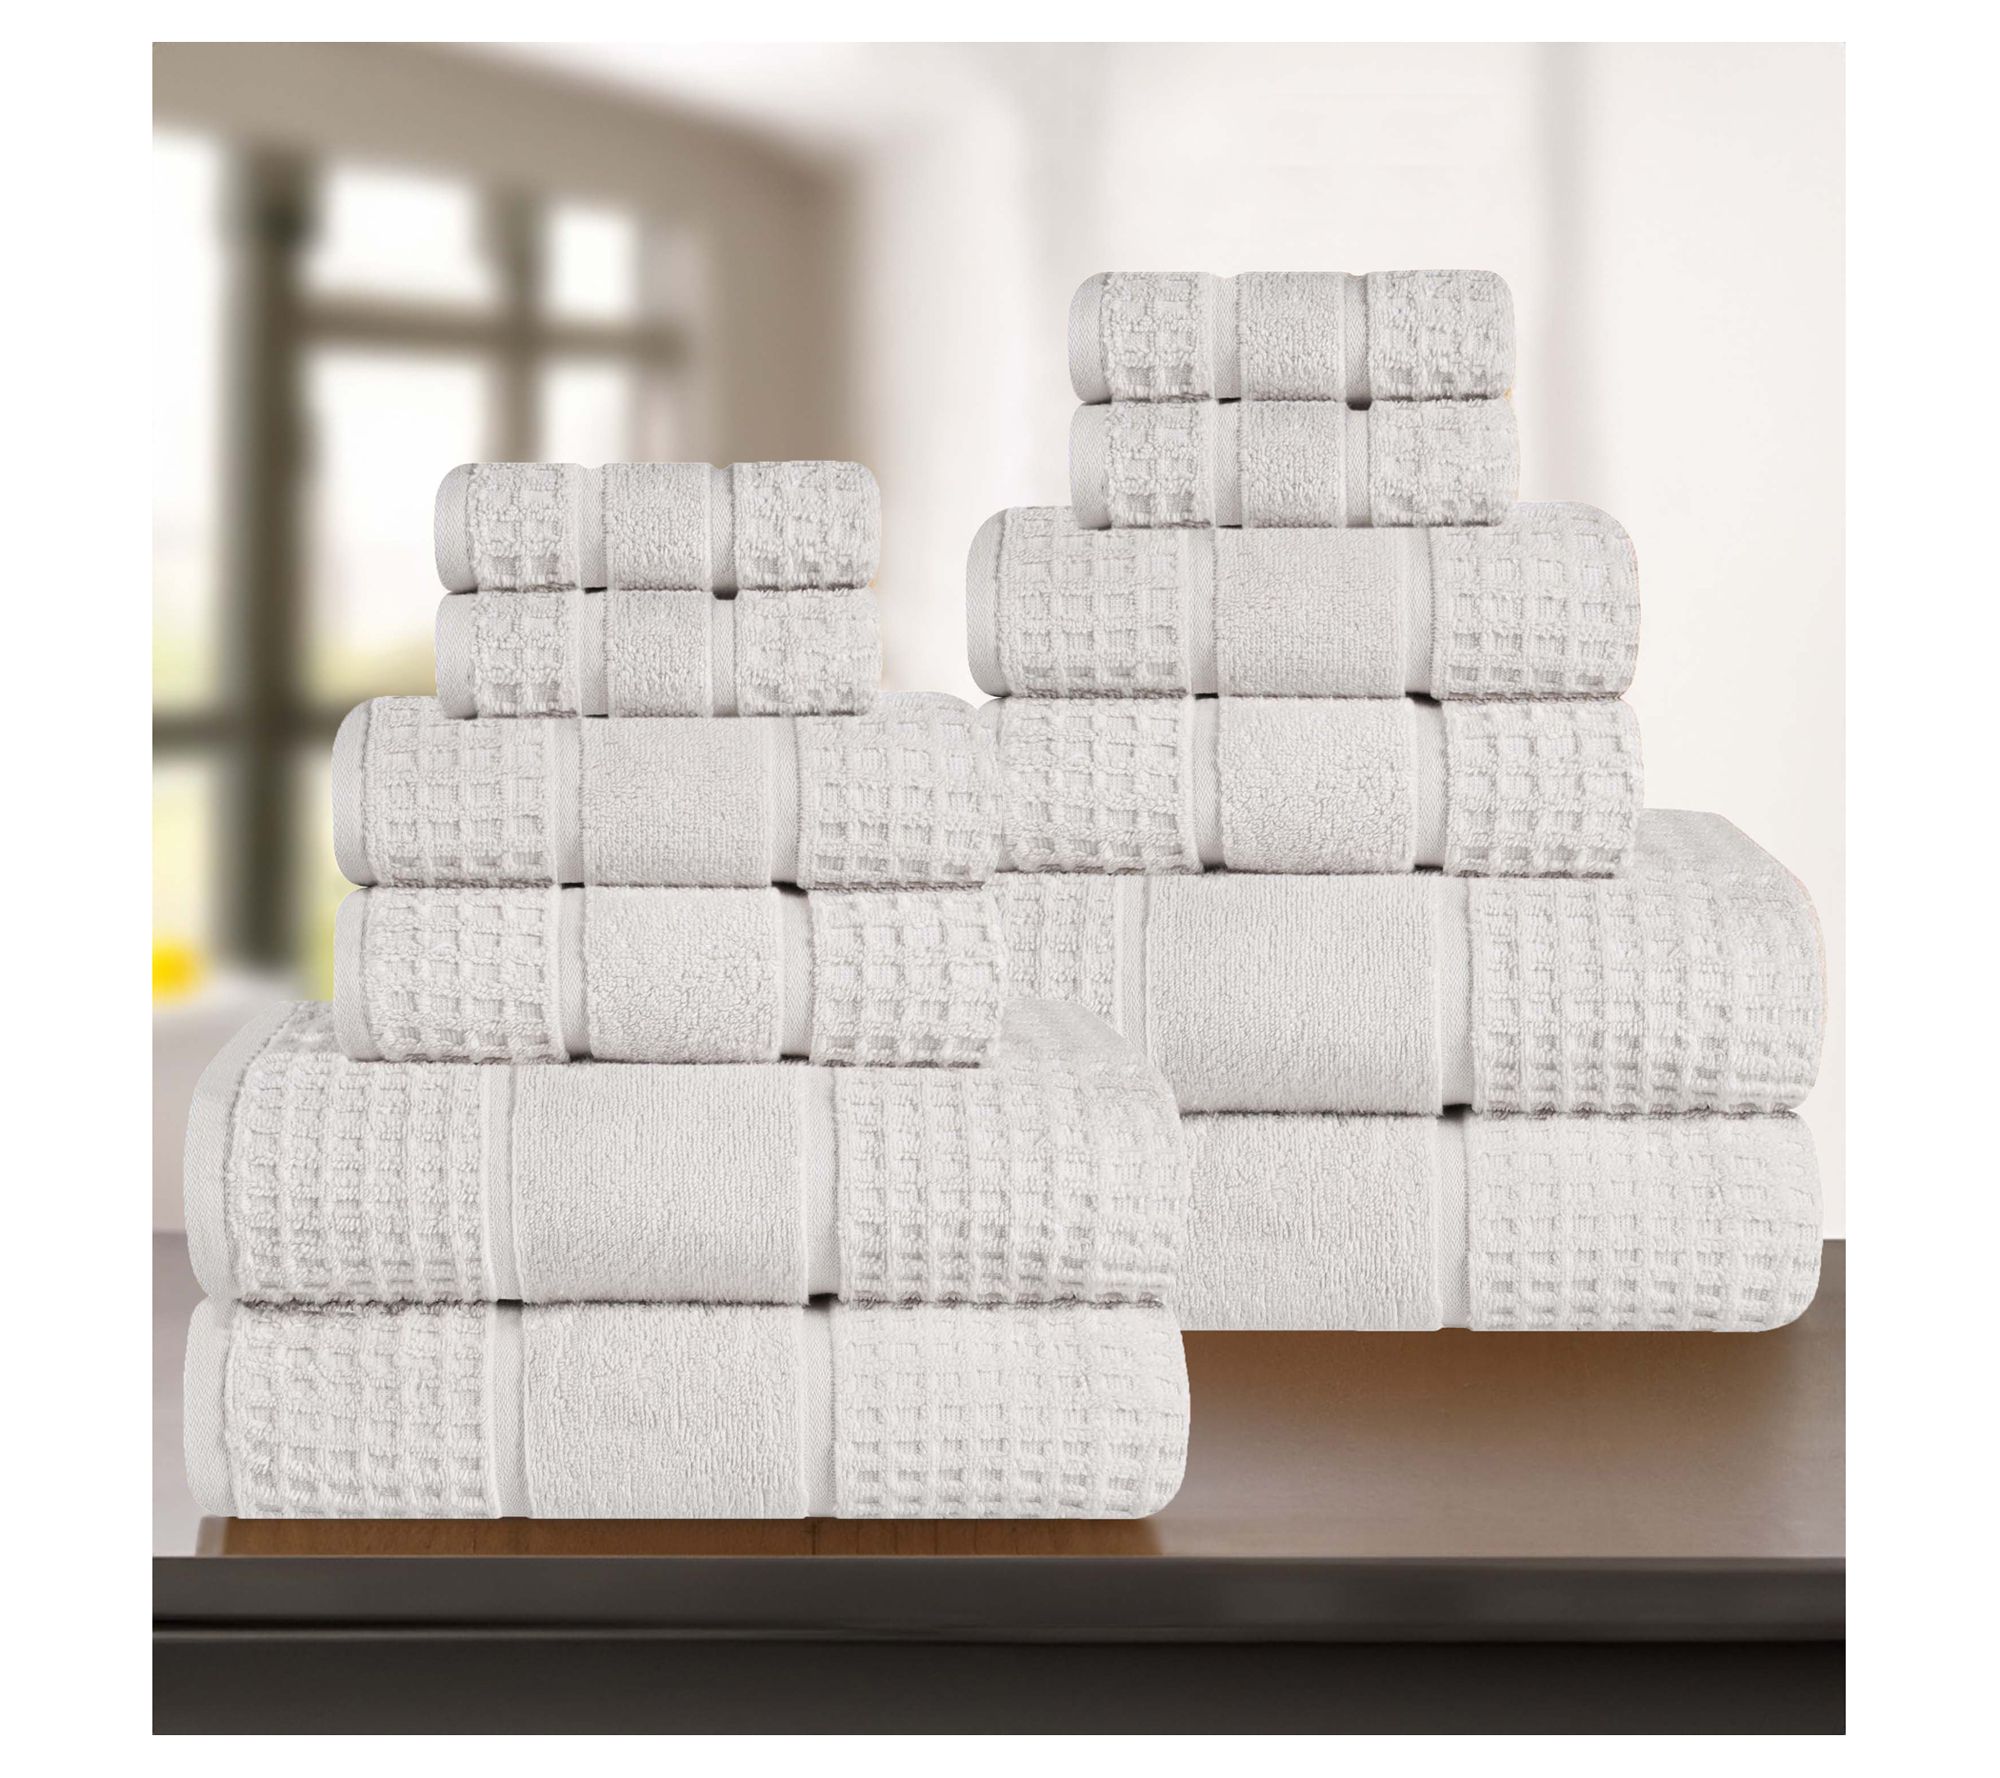 Superior Zero Twist Cotton Waffle Face Towel Washcloth Set of 12